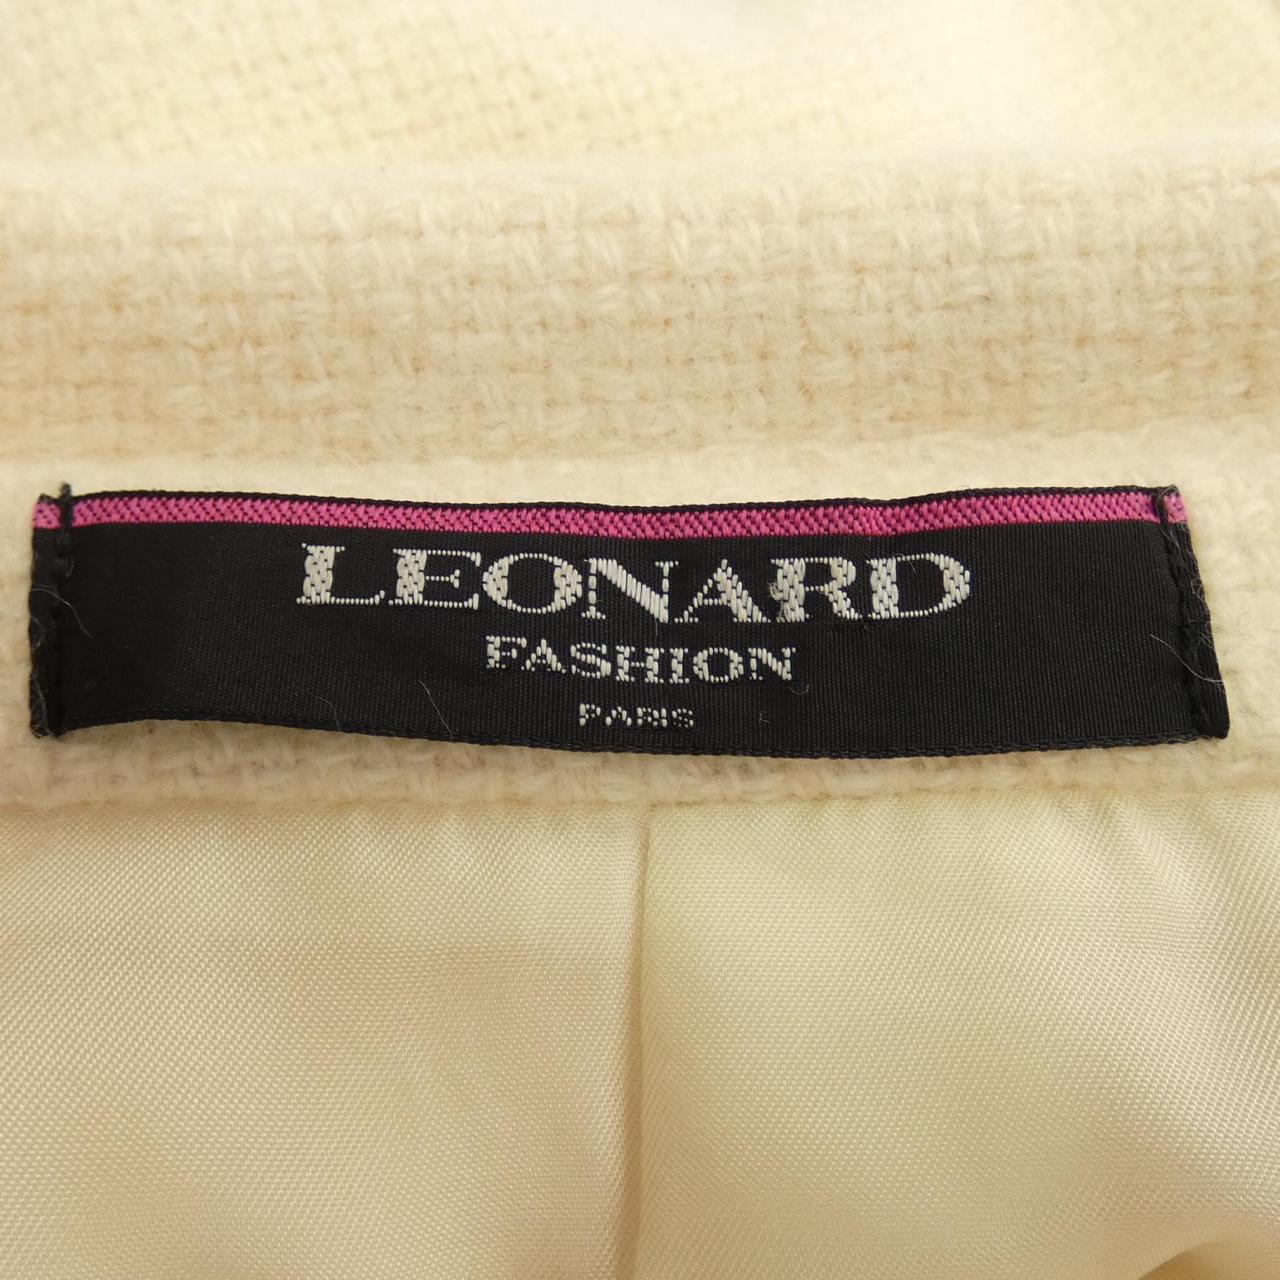 莱昂纳多时尚LEONARD FASHION外套